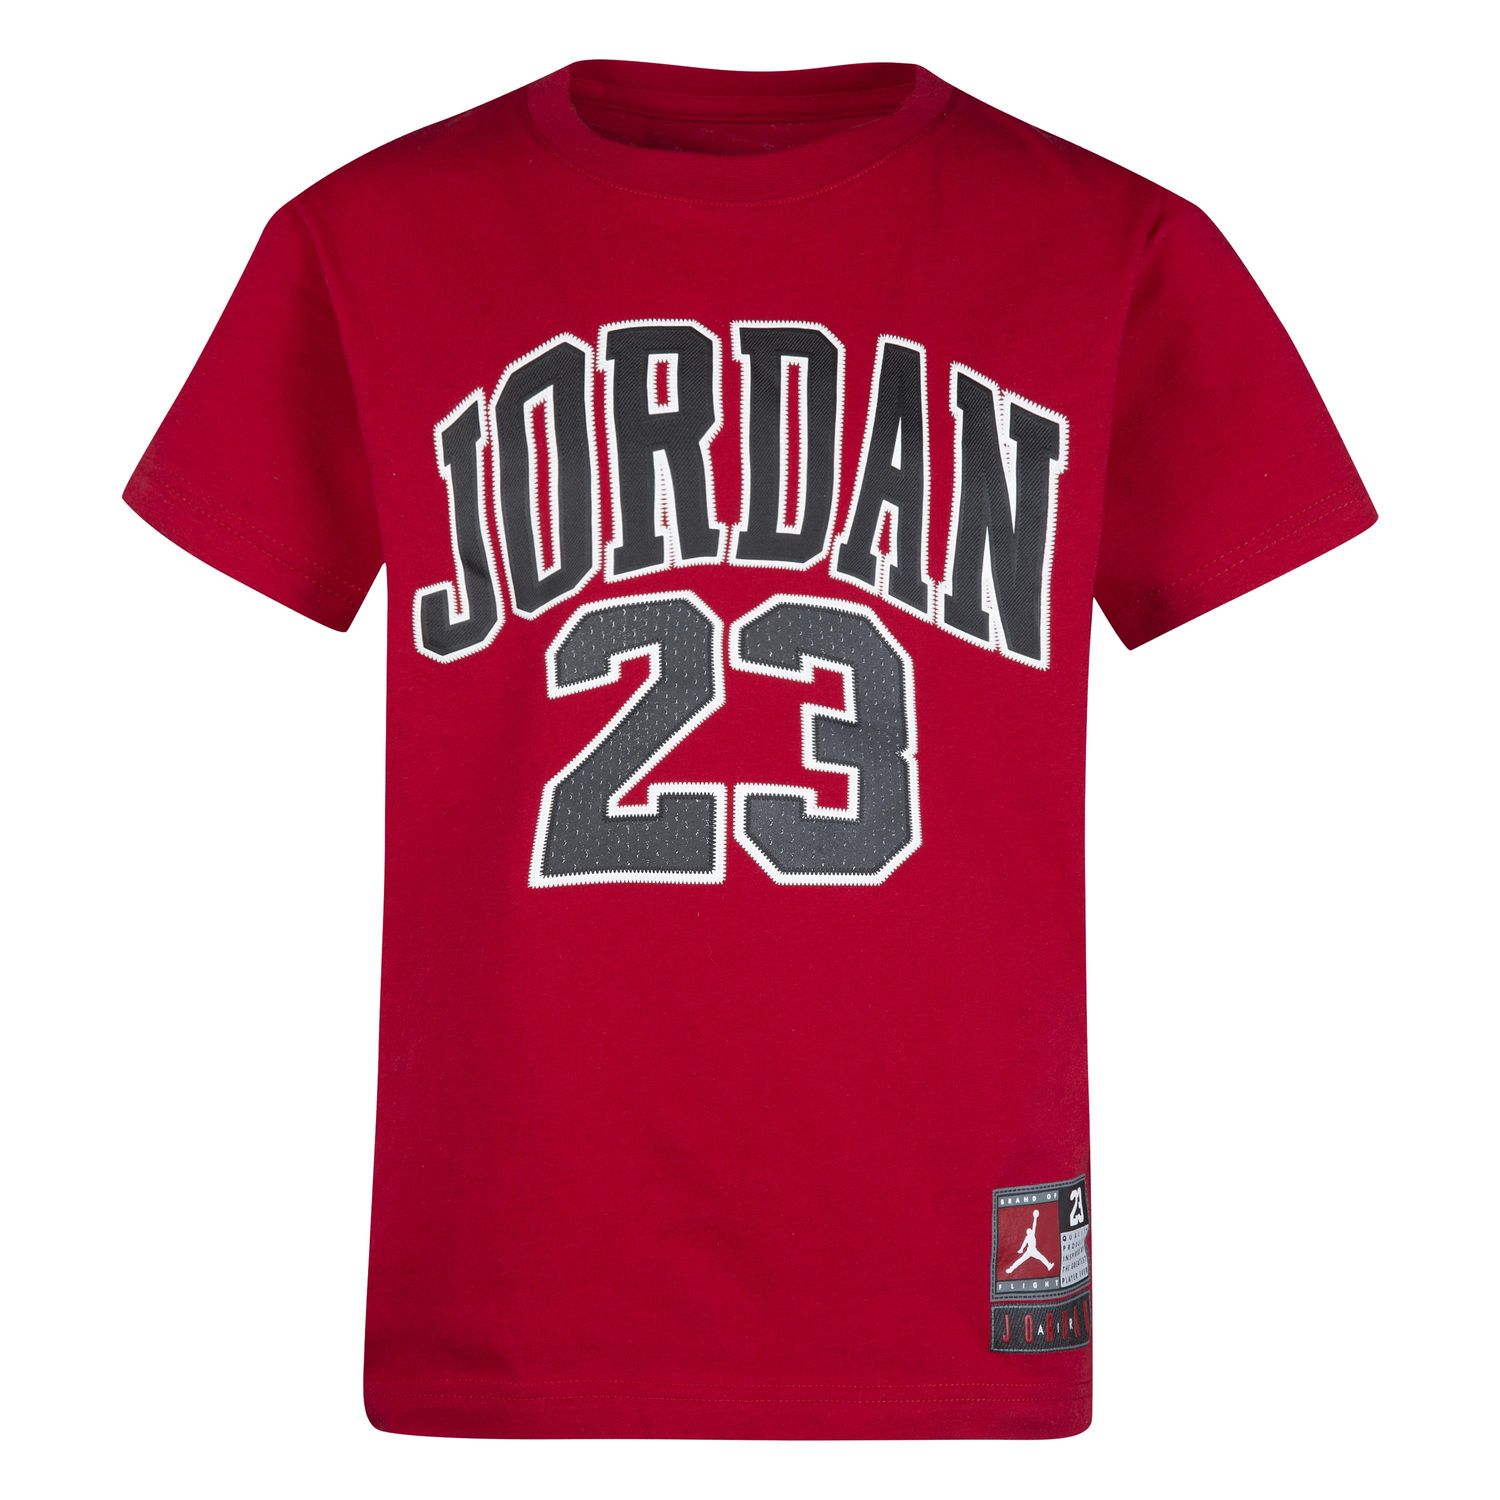 Jordan Kinder T-Shirt